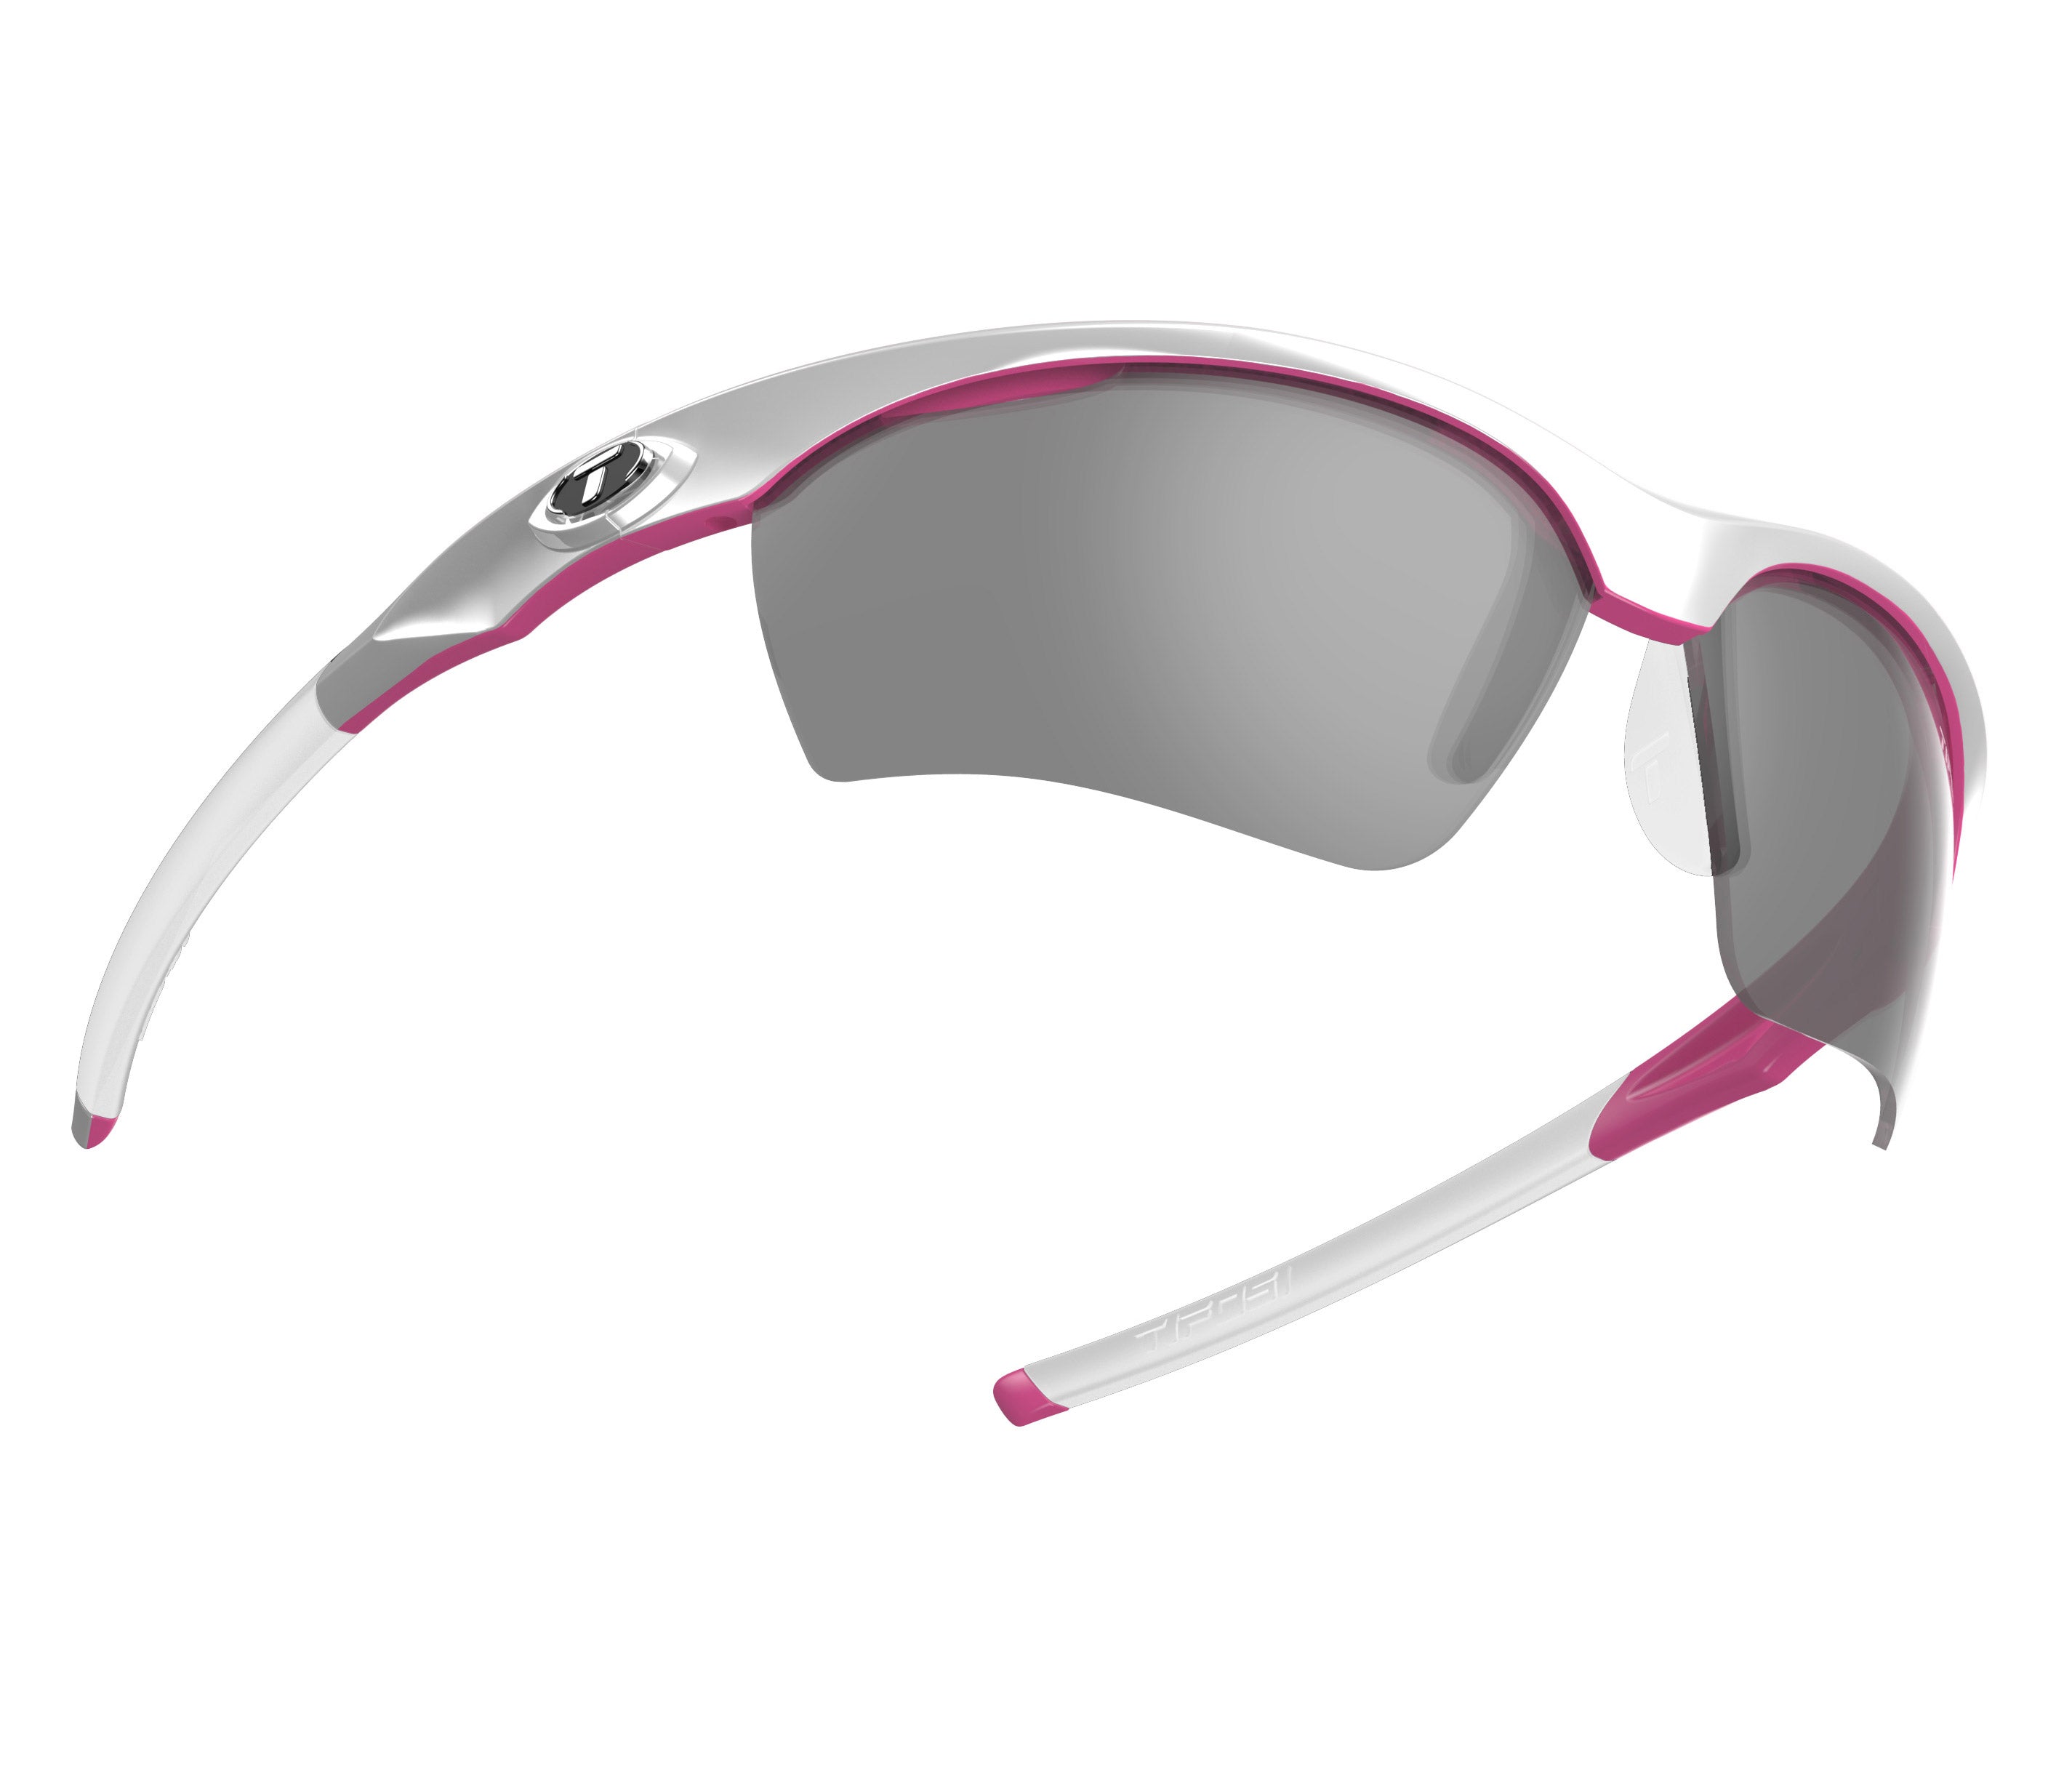 Gafas de sol TIFOSI Vero Race Pink (incluye varias lentes)